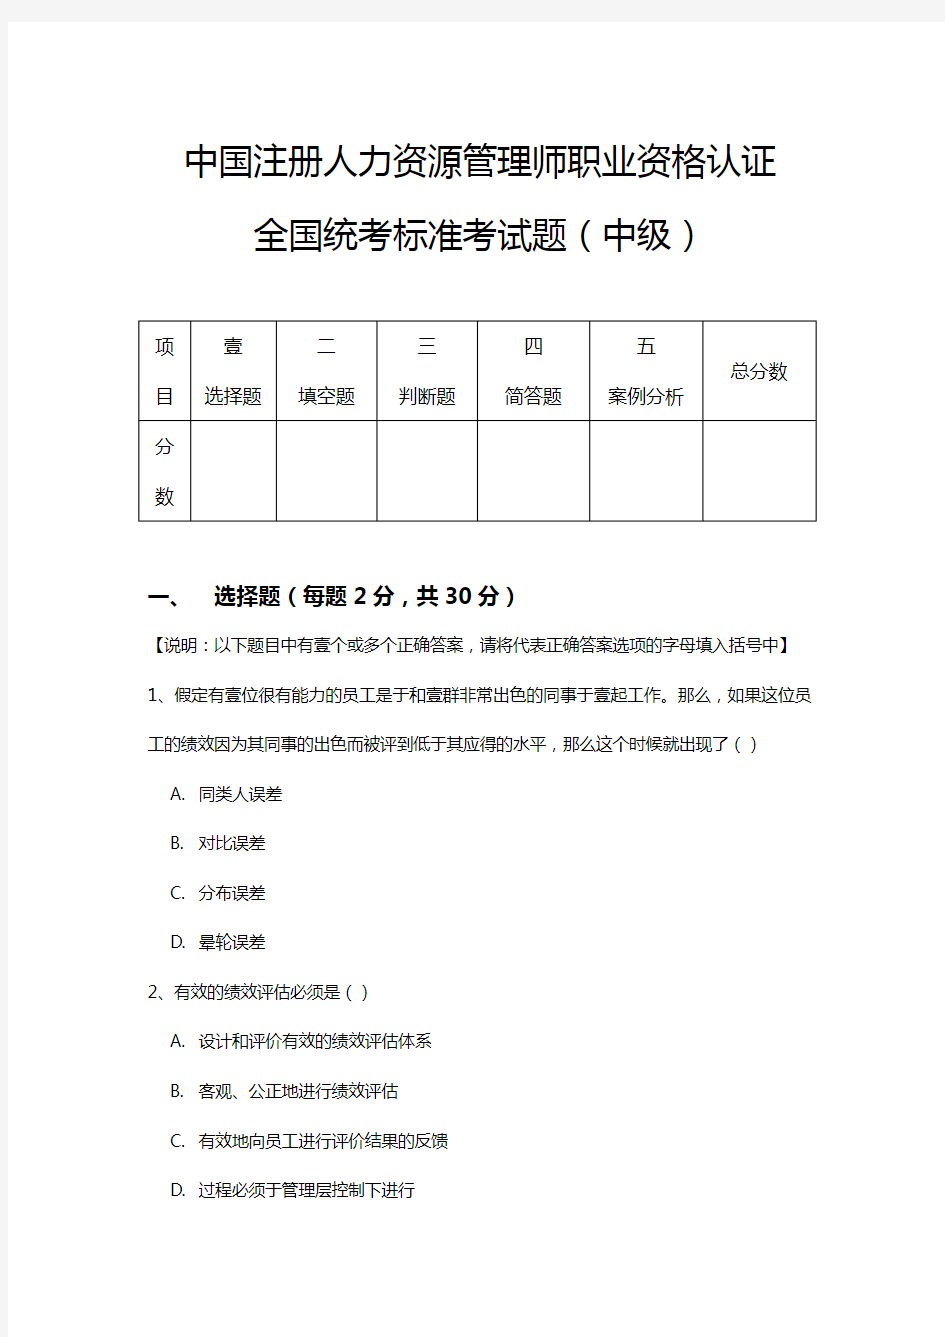 人力资源管理中国注册人力资源管理师职业资格认证